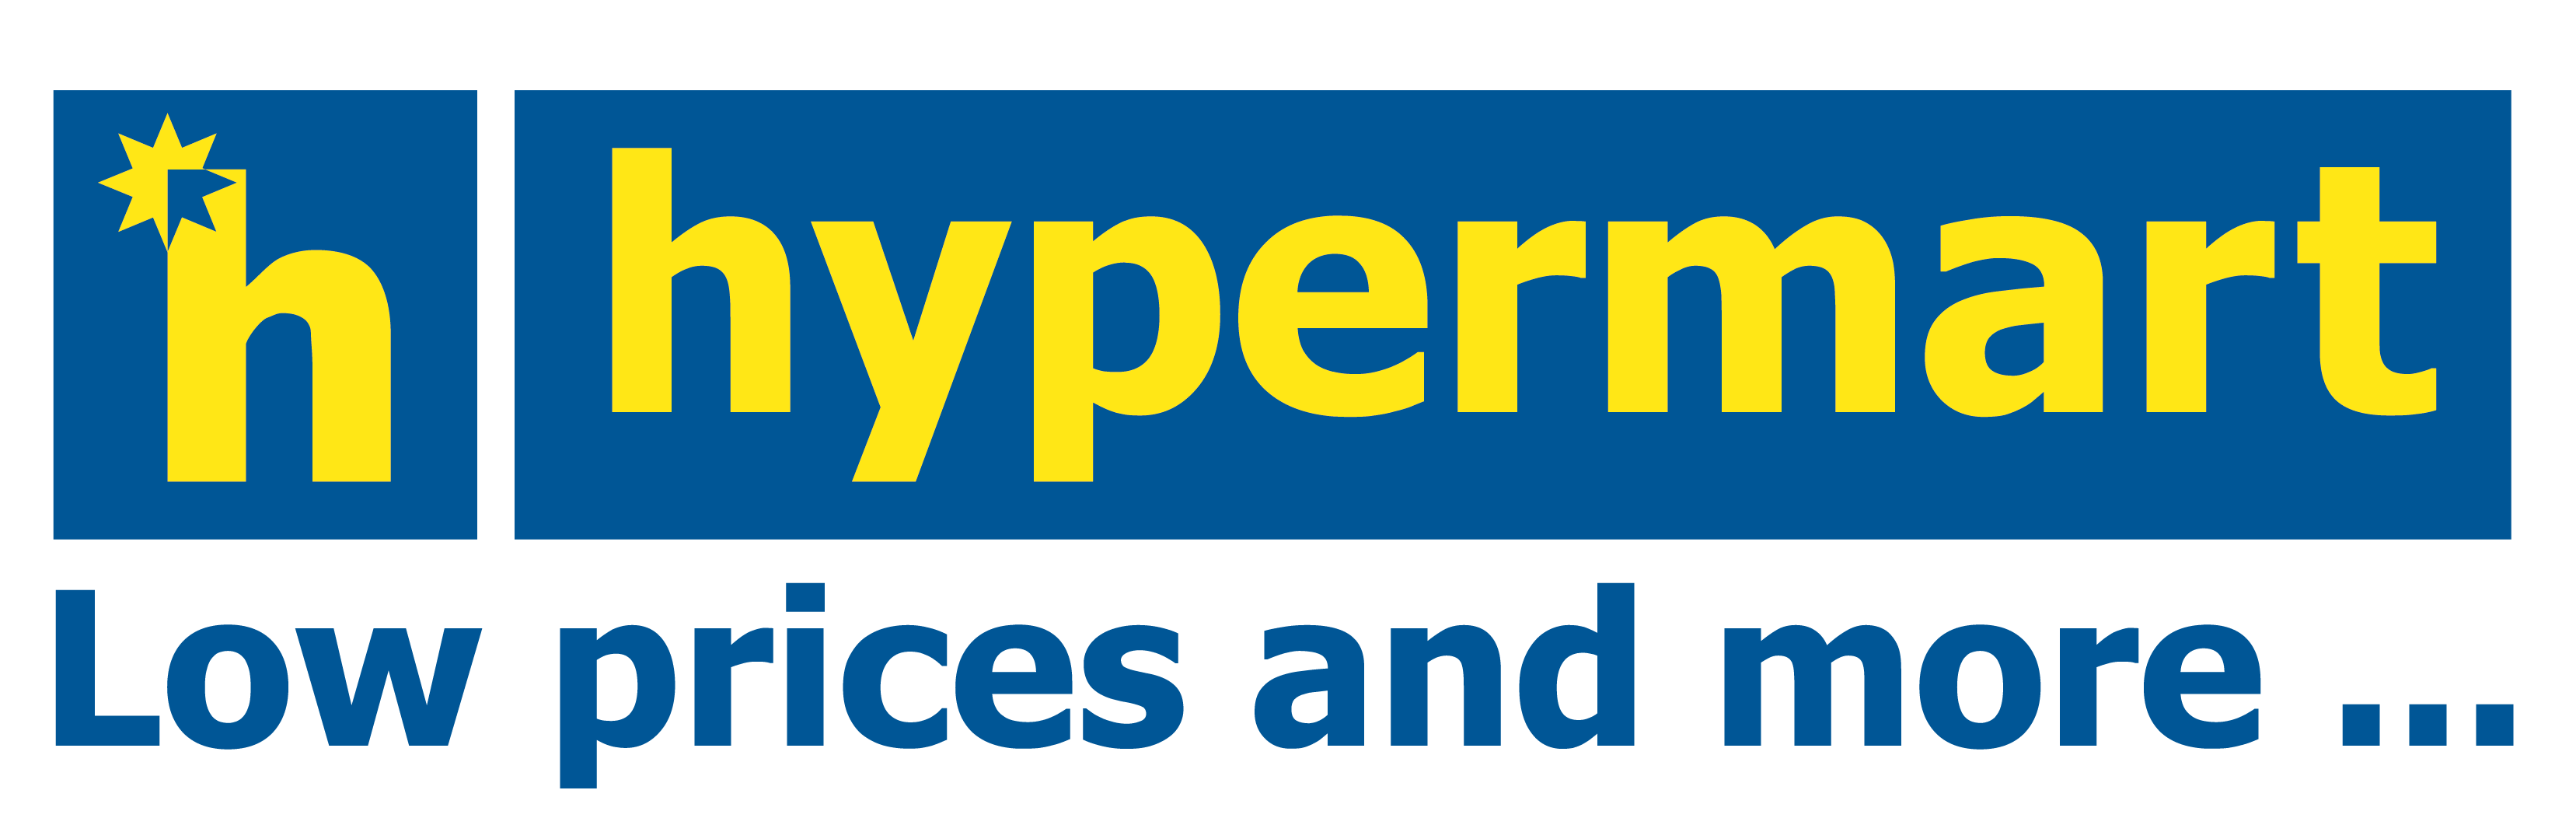 Hypermart Brand Logo